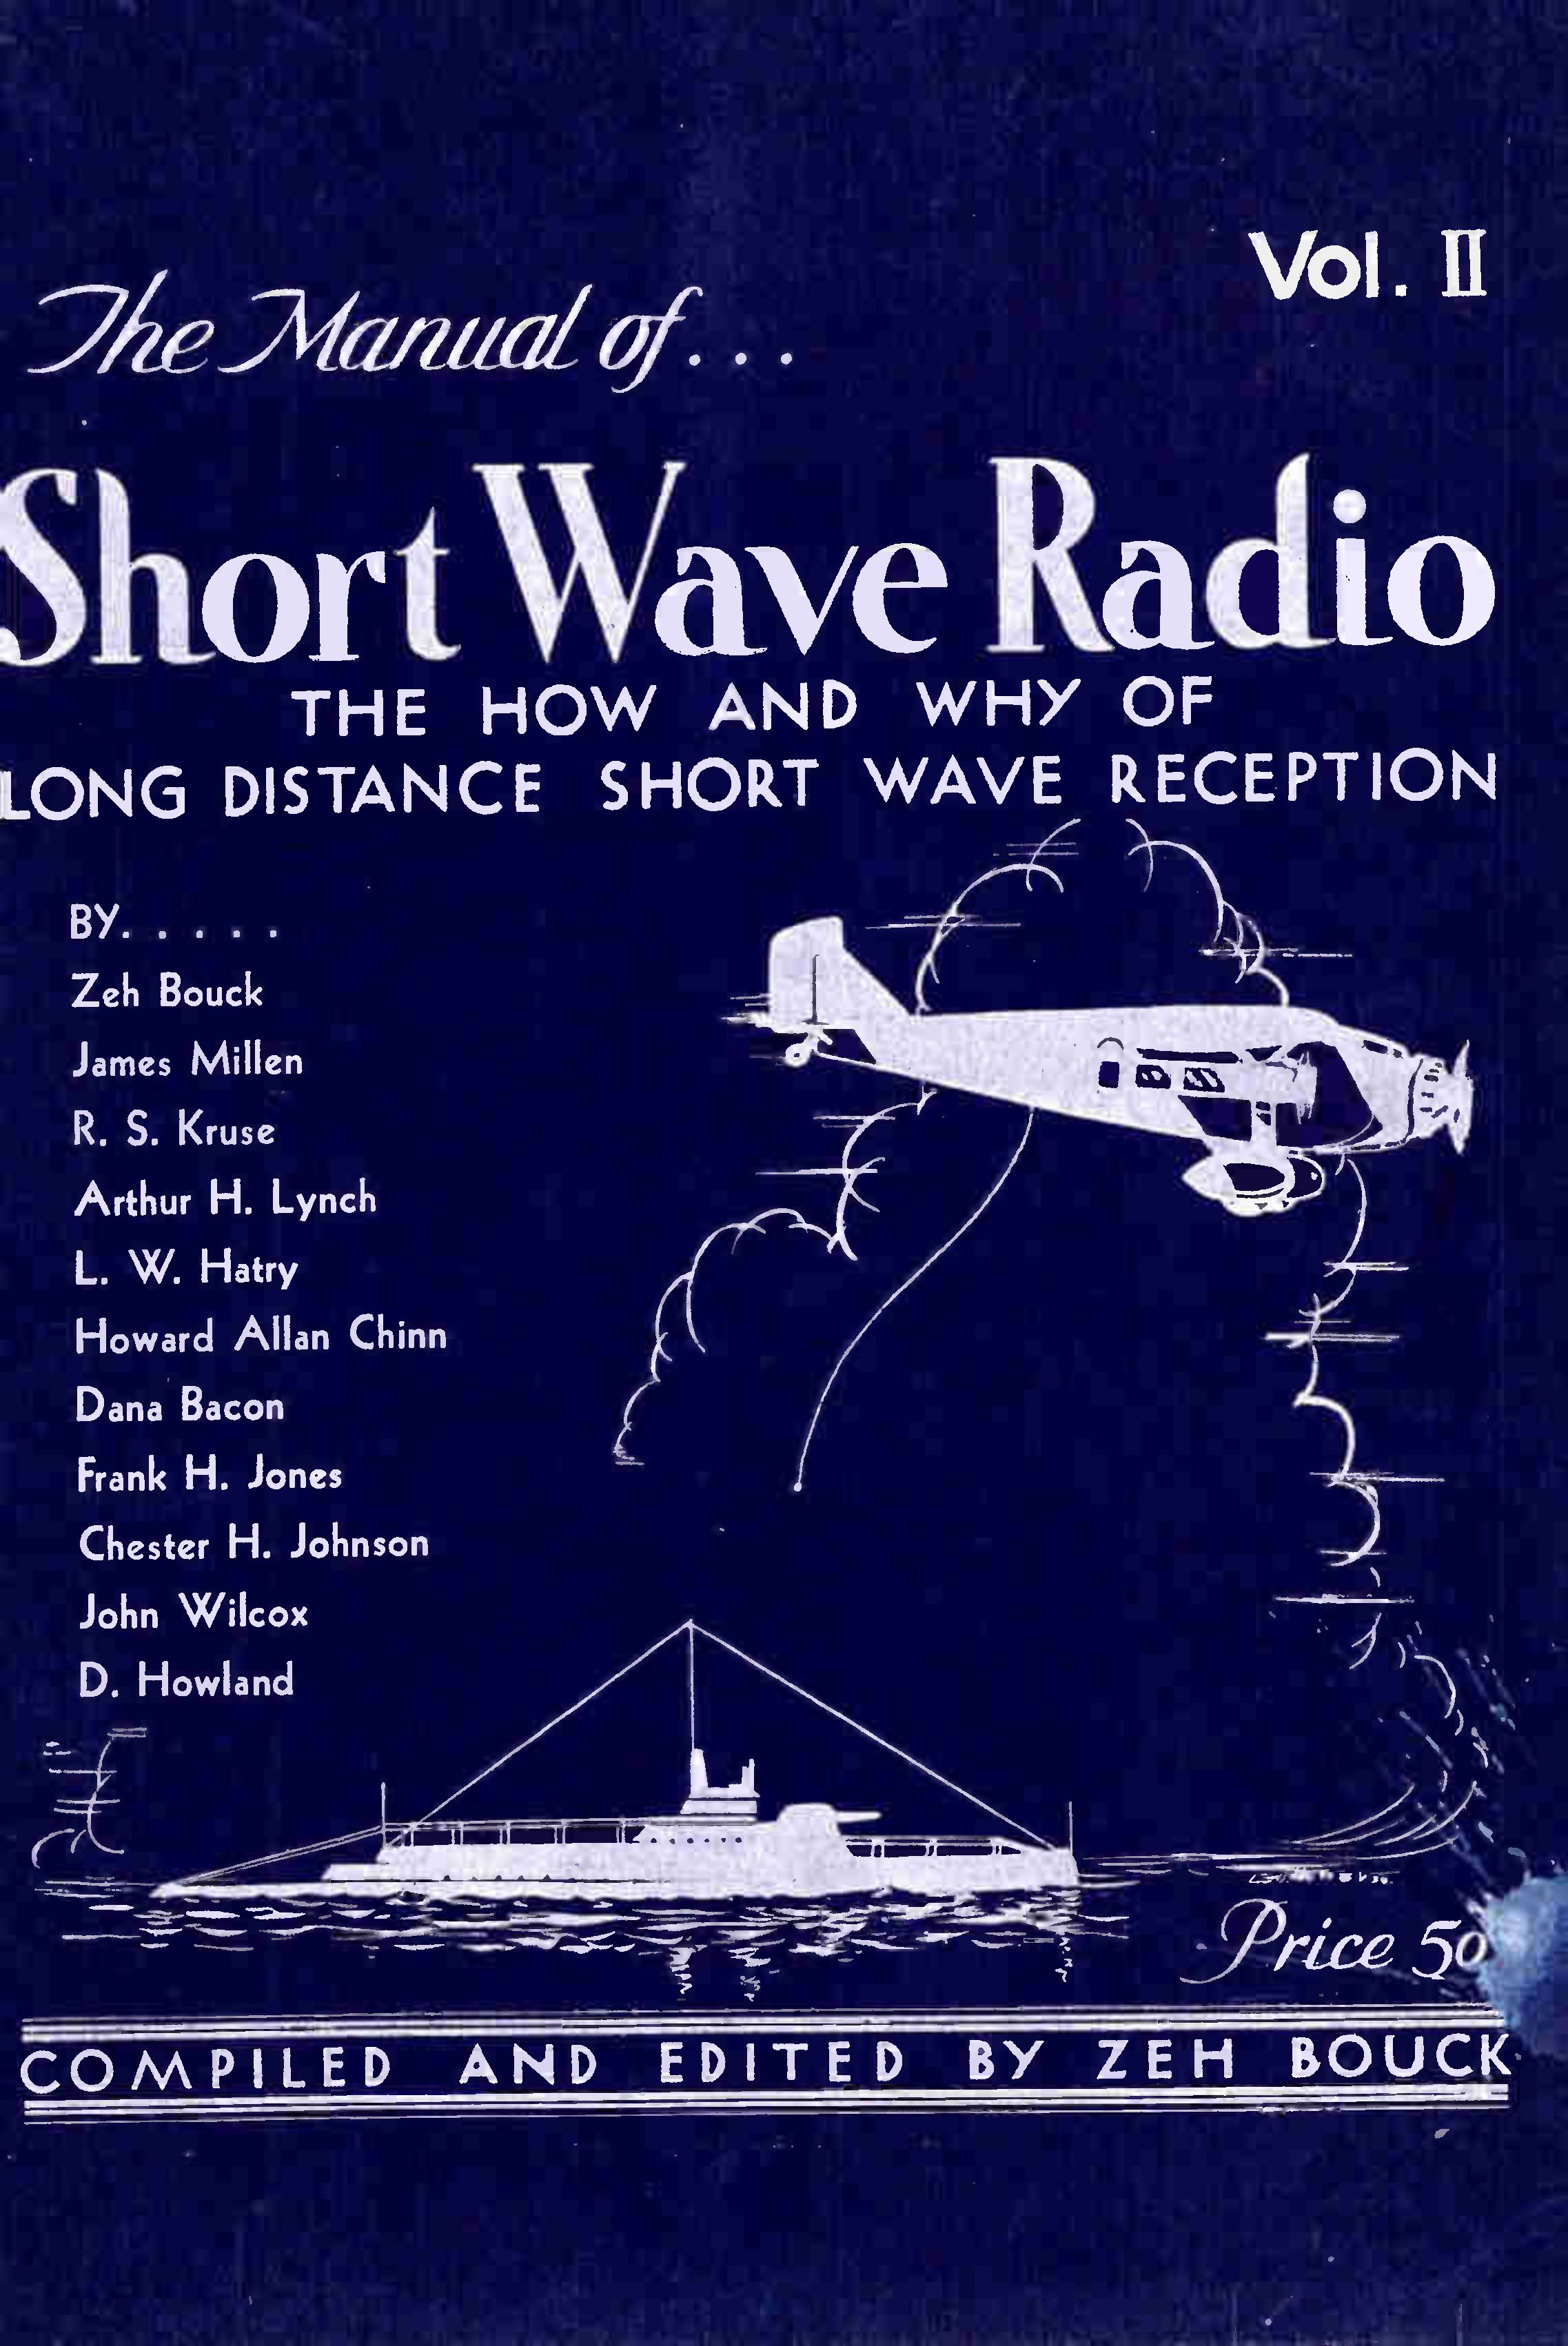 The manual of Shortwaveradio 1932